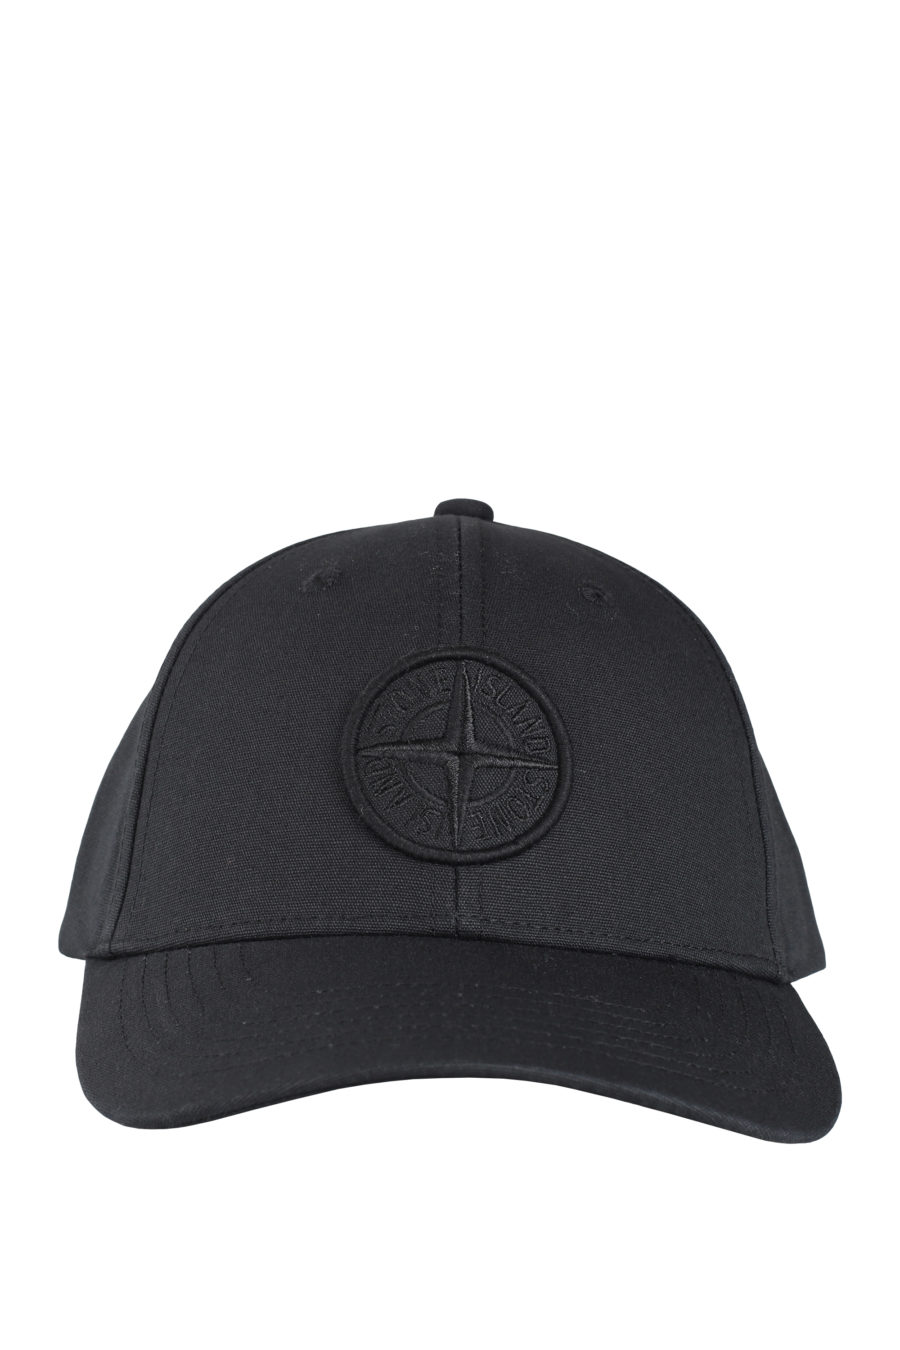 Gorra negra con logo parche - IMG 9709